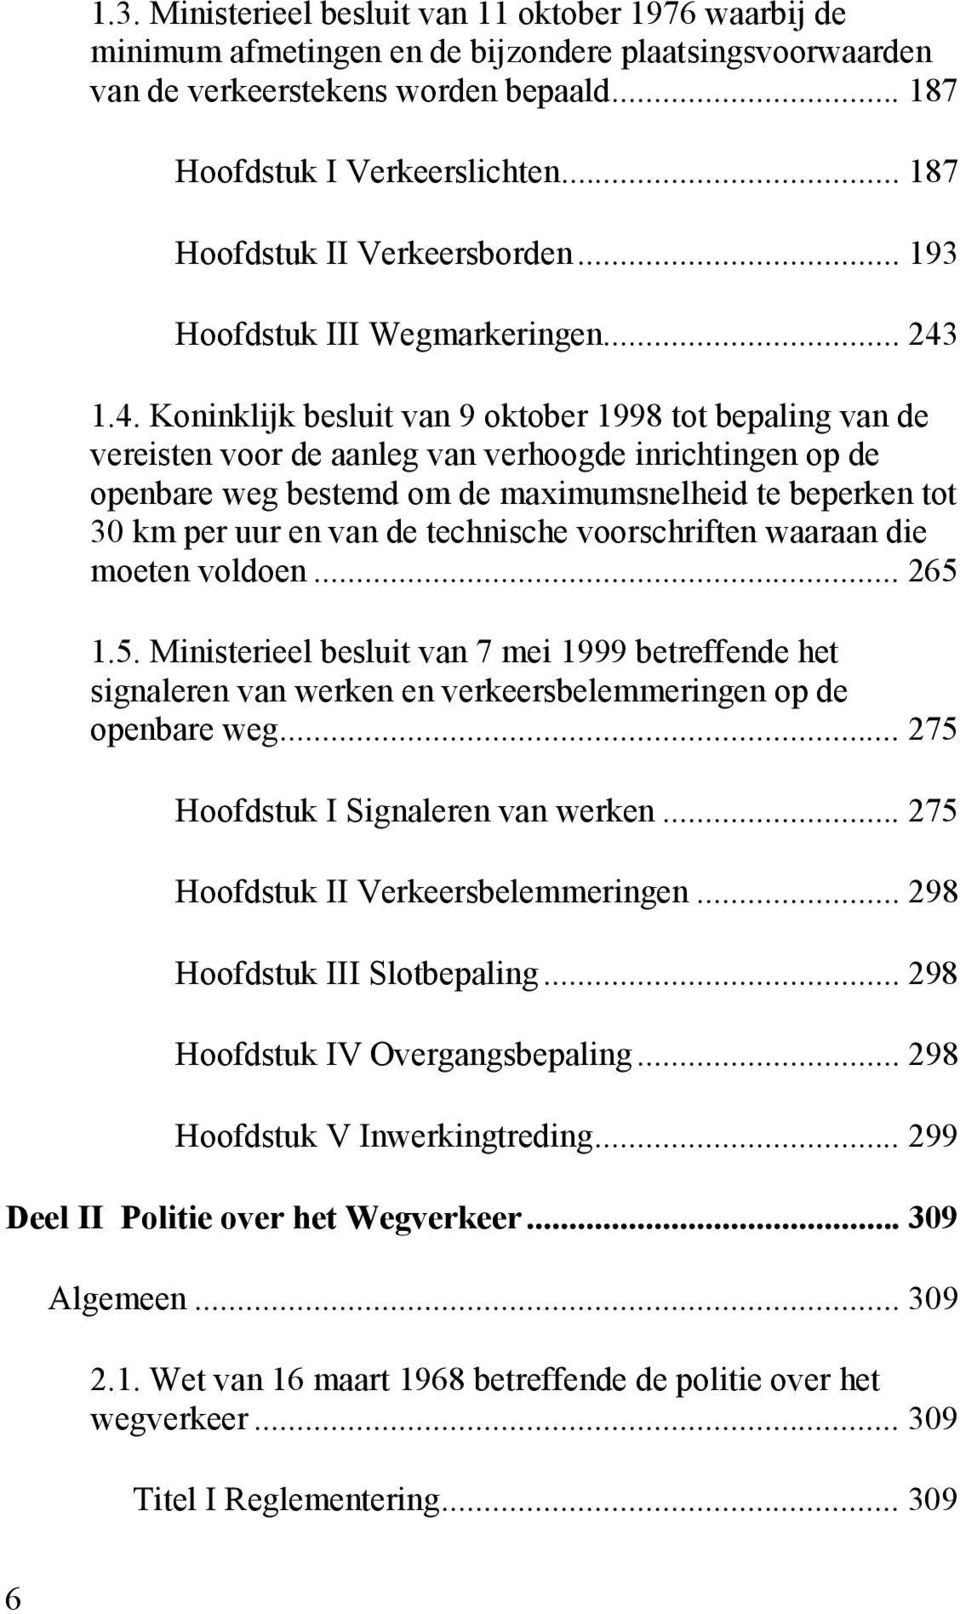 1.4. Koninklijk besluit van 9 oktober 1998 tot bepaling van de vereisten voor de aanleg van verhoogde inrichtingen op de openbare weg bestemd om de maximumsnelheid te beperken tot 30 km per uur en